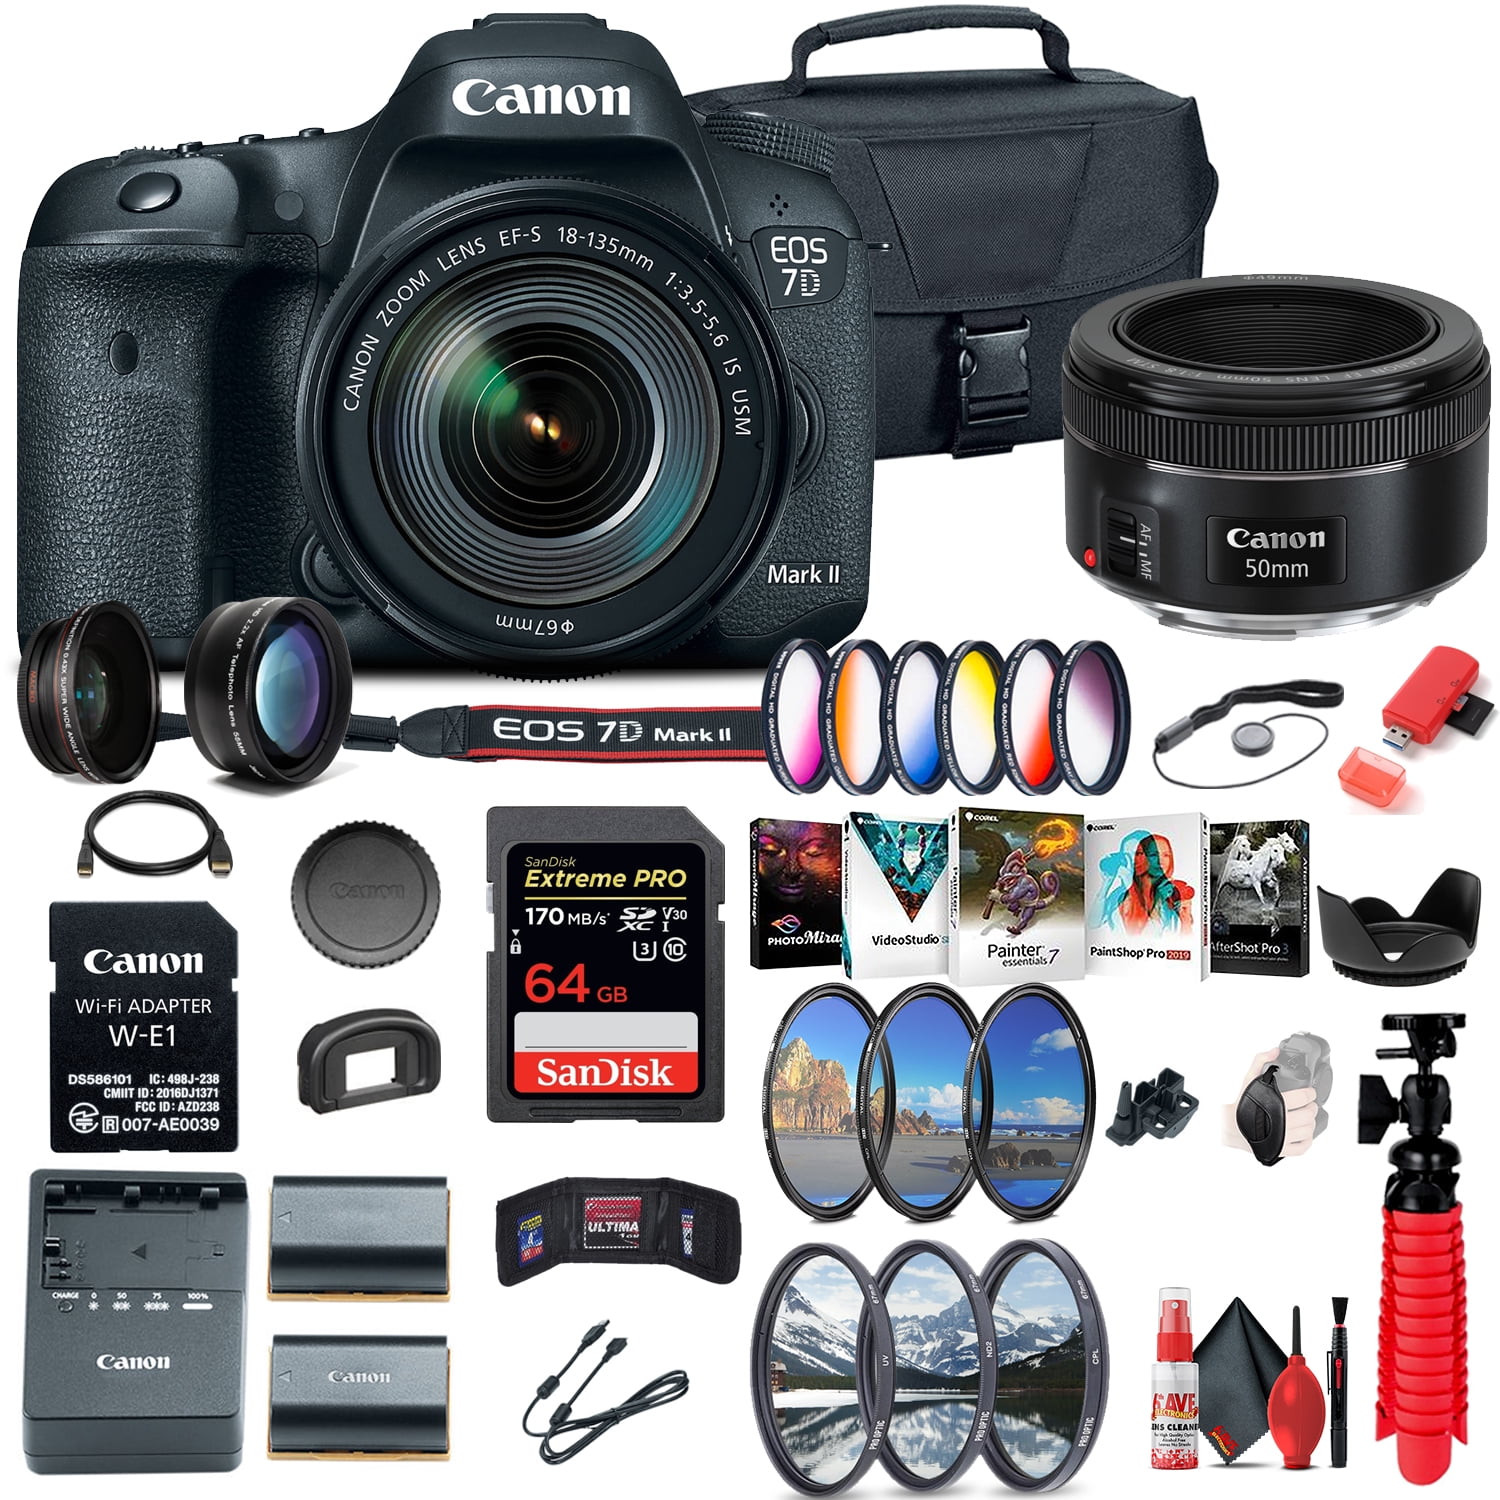 Bekwaamheid ik ben gelukkig Minnaar Canon EOS 7D Mark II DSLR Camera W/ 18-135mm f/3.5-5.6 IS USM Lens & W-E1 +  More - Walmart.com